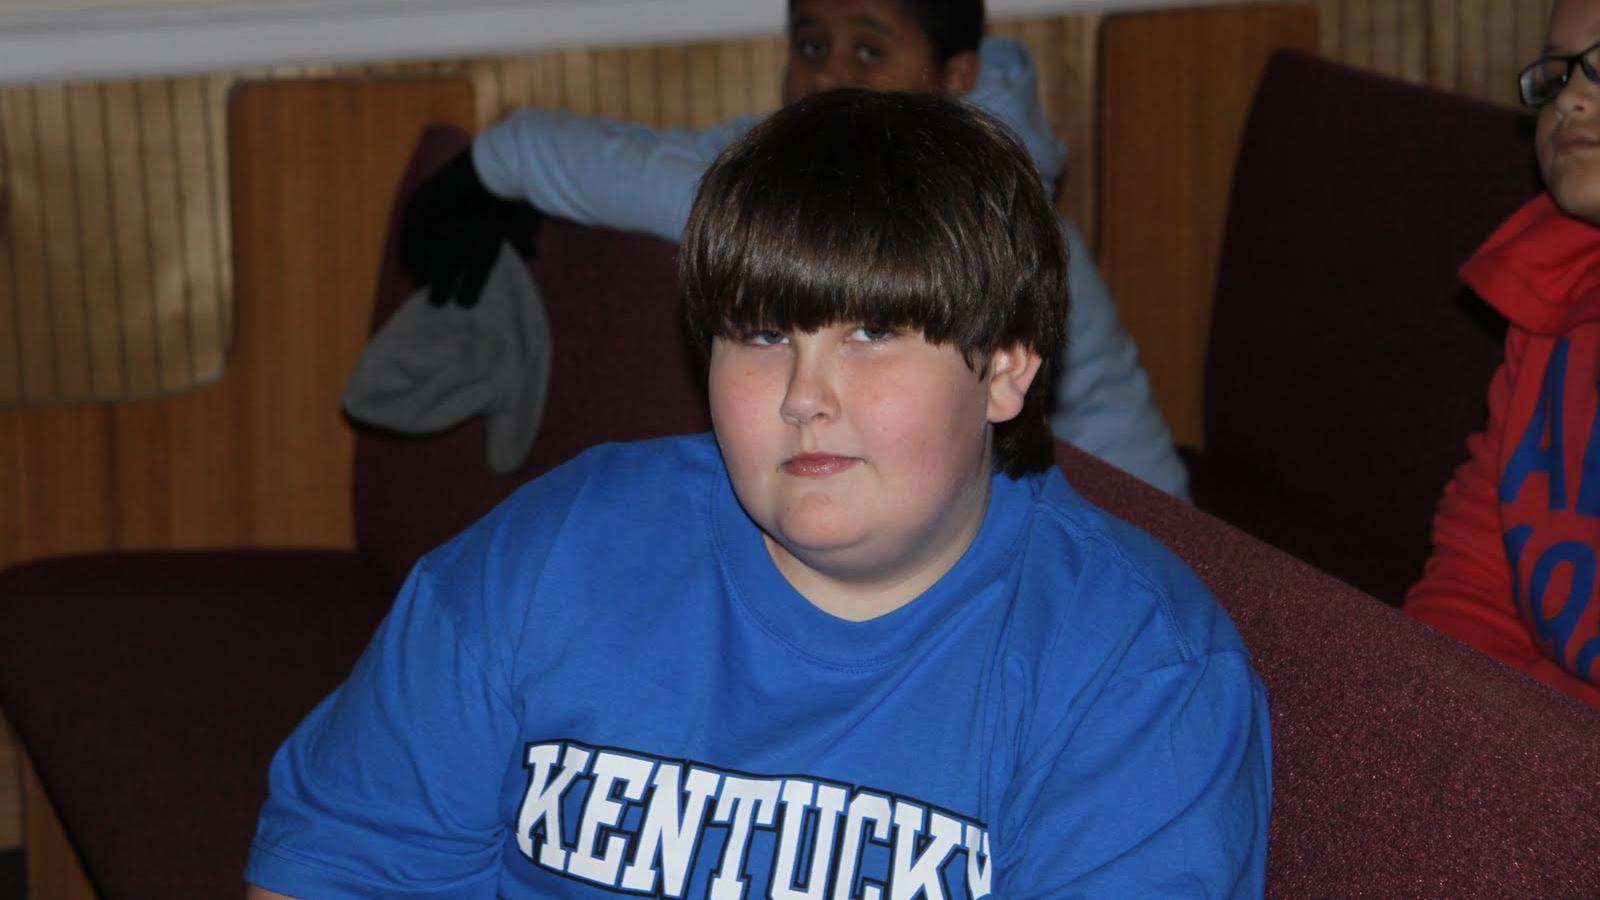 Kentucky_Fat_Children_193.jpg